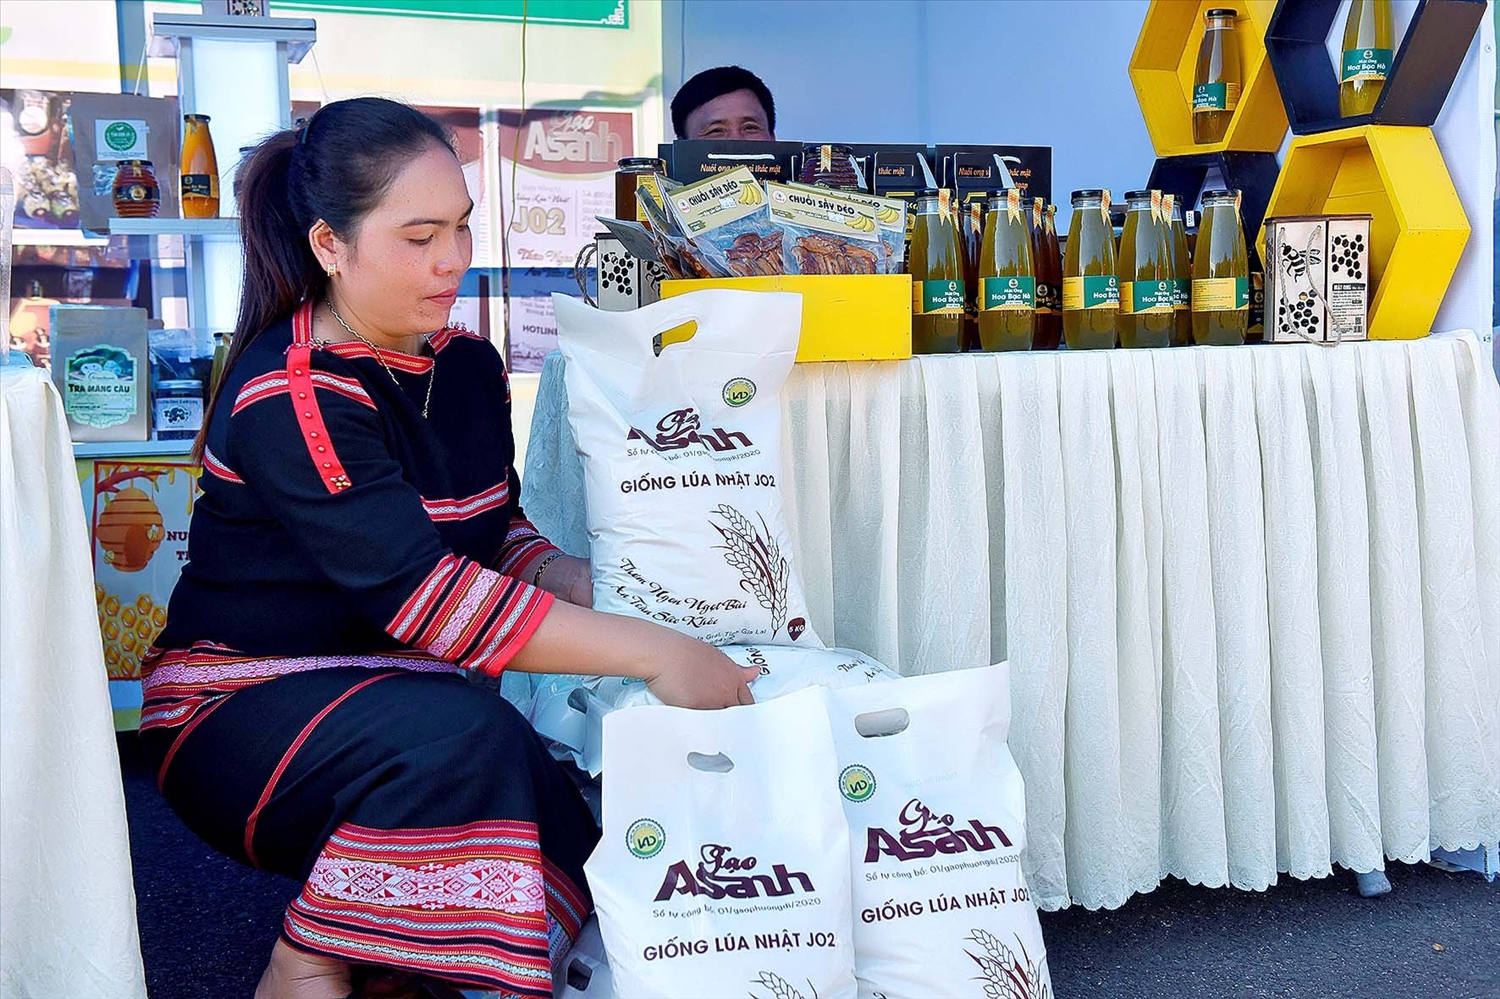 Gạo A Sanh được trưng bày và bán tại các Hội chợ Nông sản an toàn 